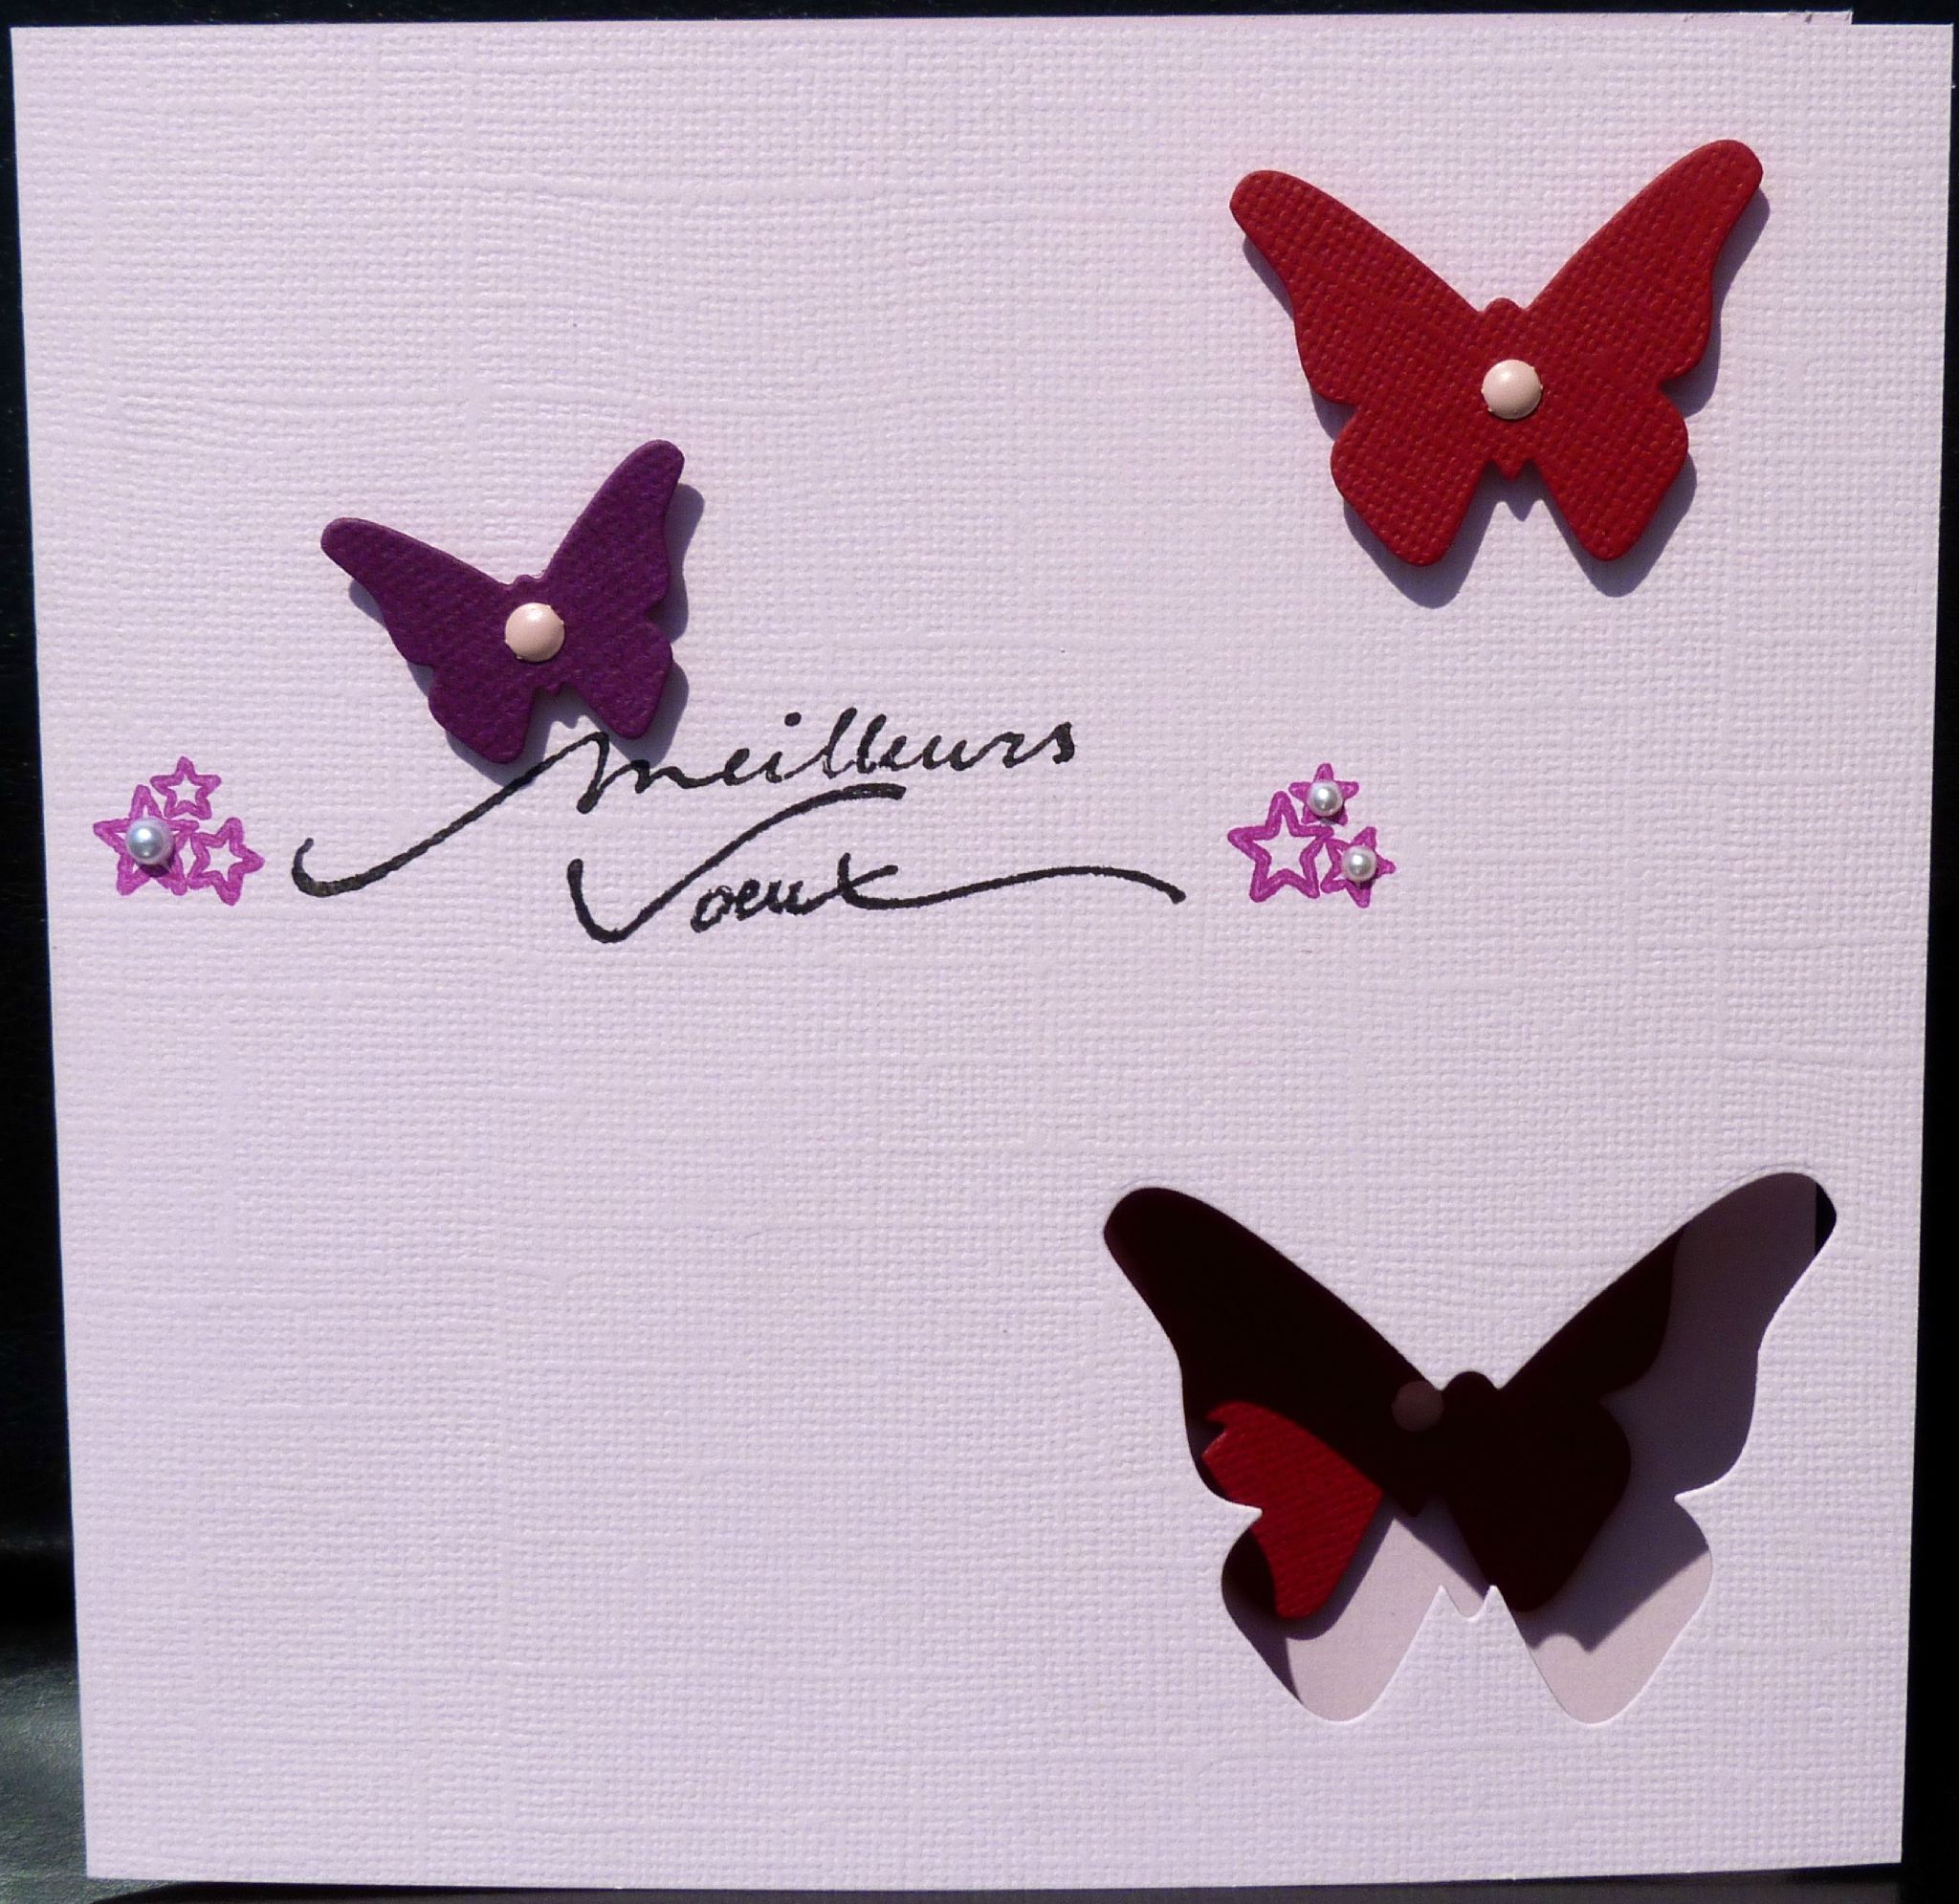 Carte de vœux for Sale avec l'œuvre « Sticker papillon vert olive